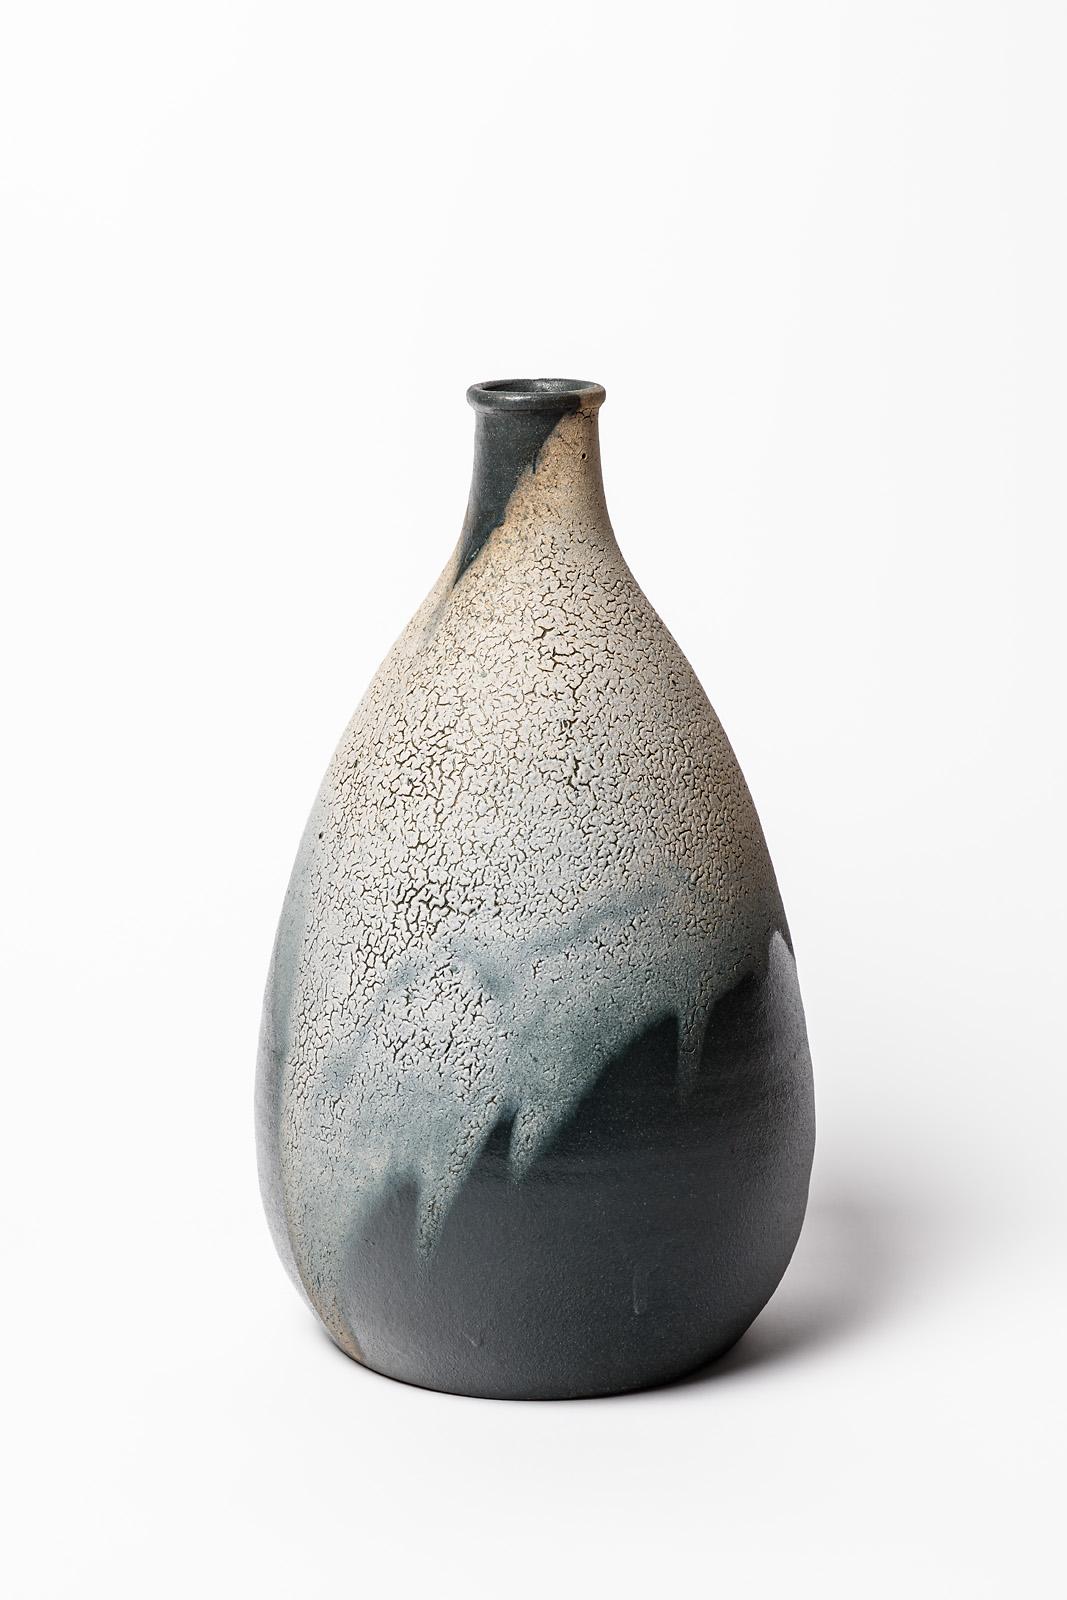 Jean Pointu

Elegante Keramikvase aus Steingut, realisiert um 1930

Vase aus Keramik im Art-Deco-Stil

Weiß/graue und grüne Keramikglasur mit Schlangenhaut-Effekt

Unter dem Sockel signiert.

Originaler perfekter Zustand.

Höhe 35